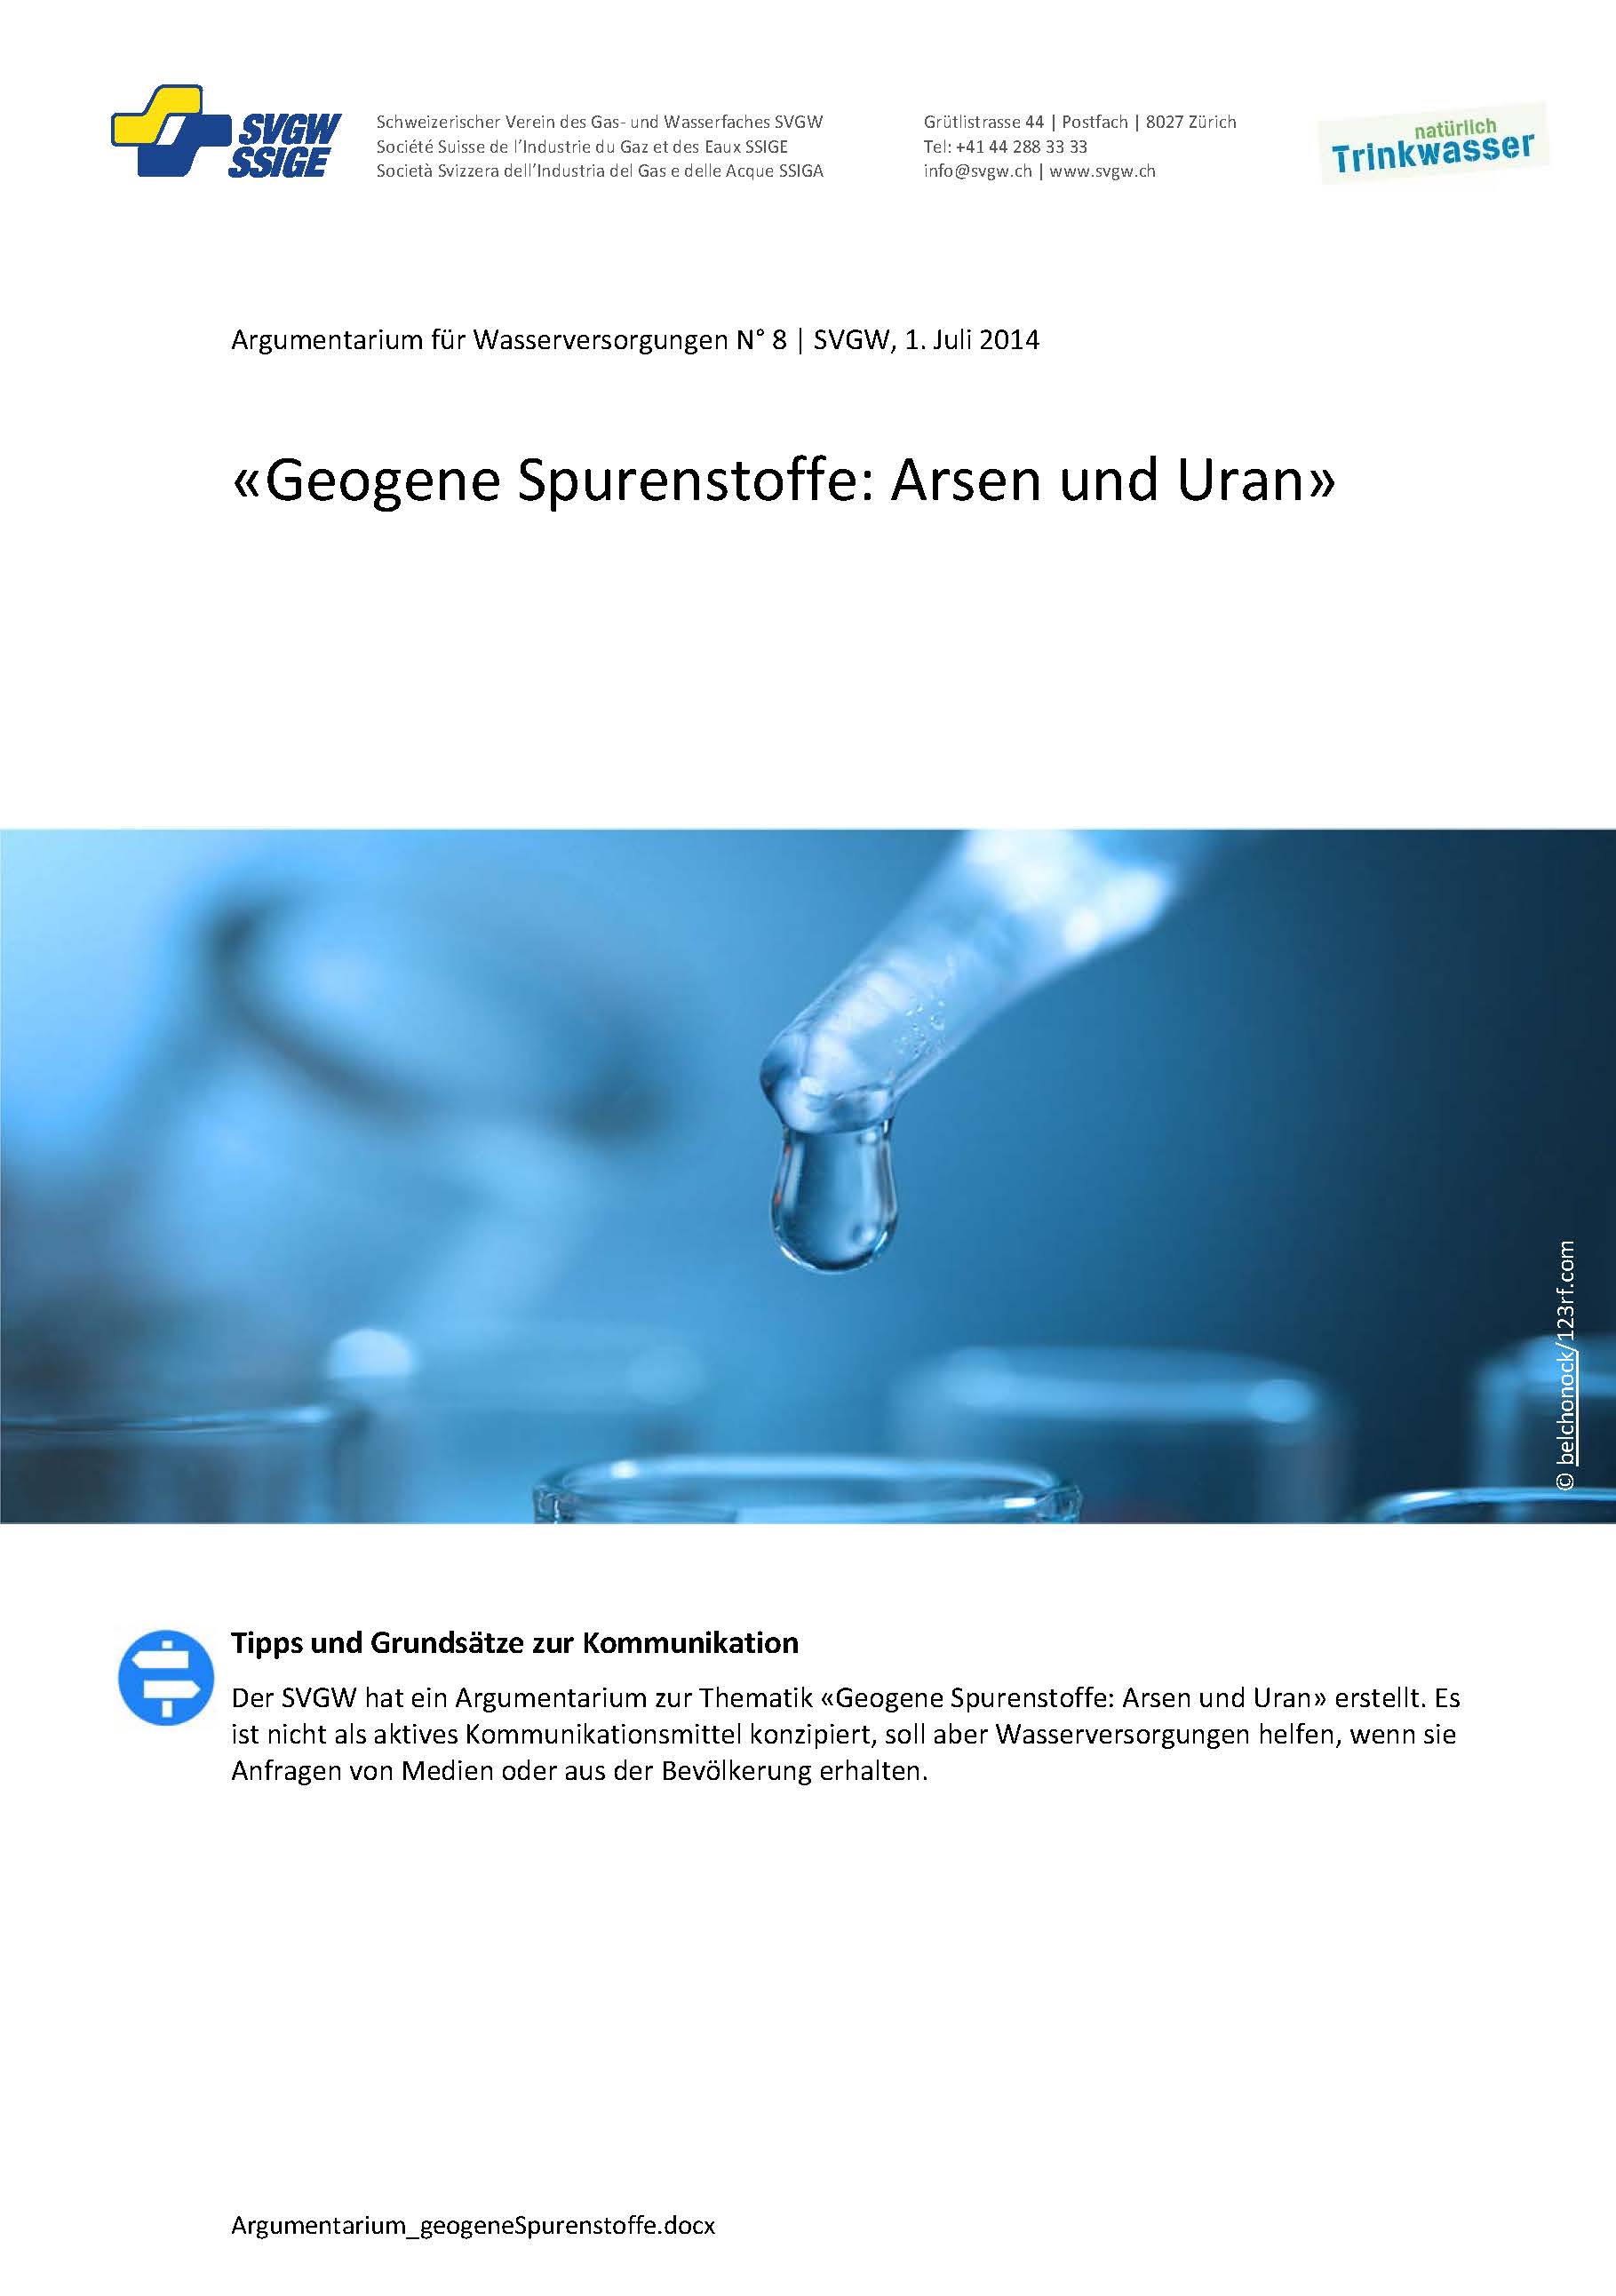 Argumentarium: «Geogene Spurenstoffe: Arsen und Uran»